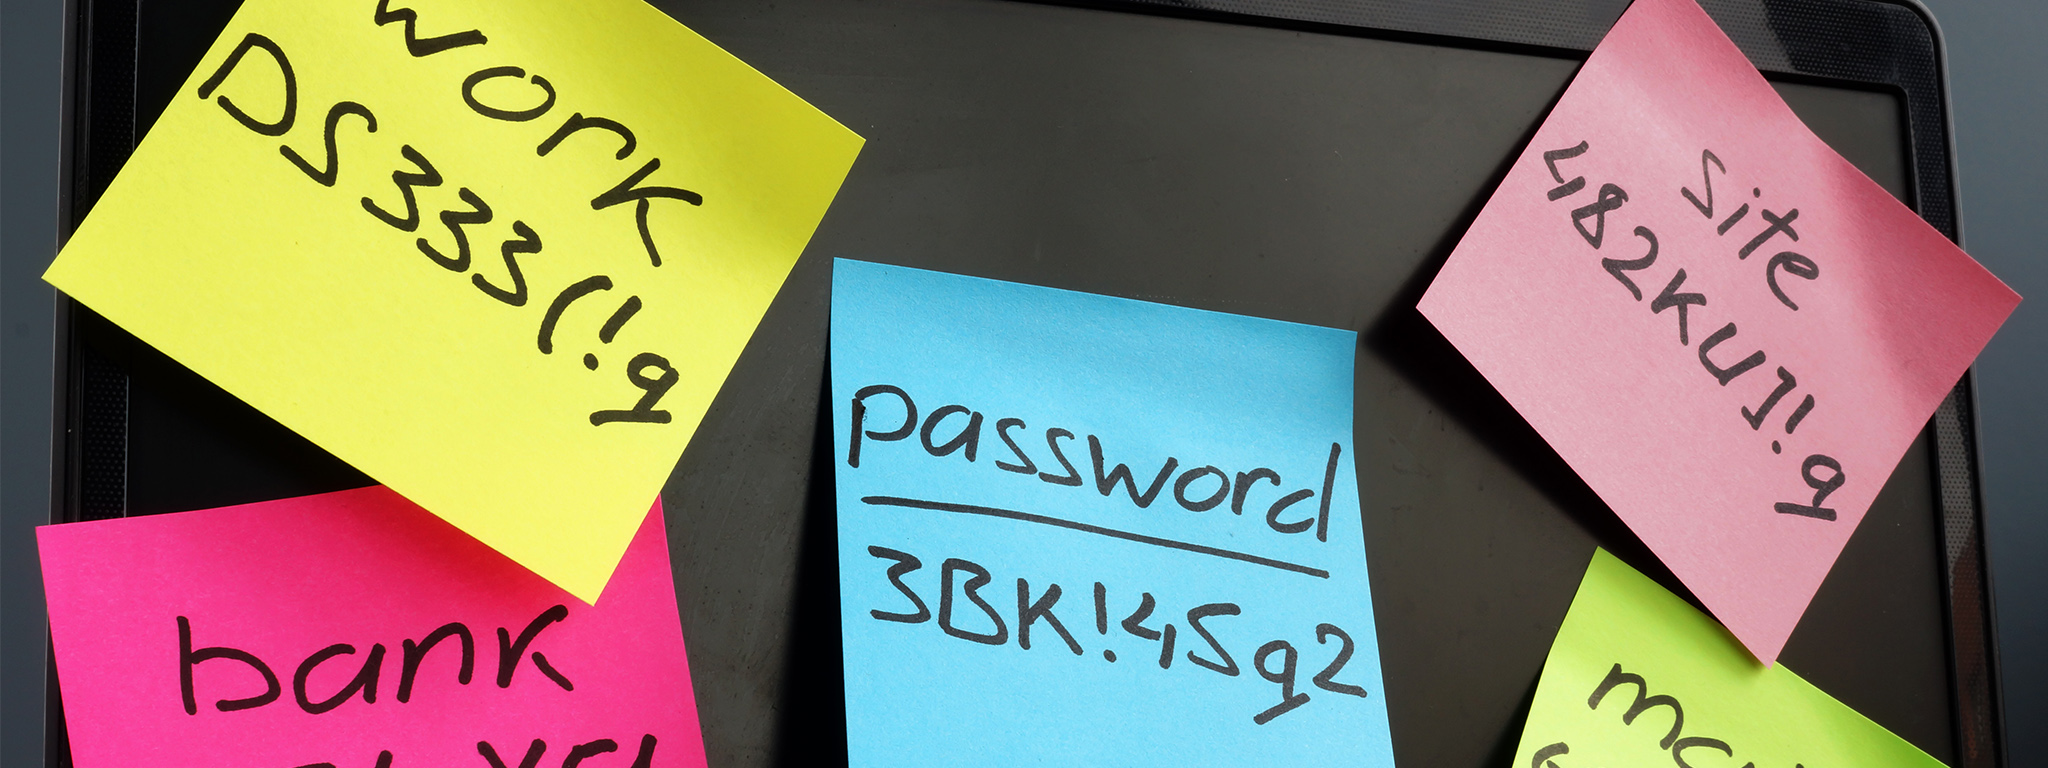 パスワードの管理。ノートパソコンのディスプレイに、複雑なパスワードをメモした付箋が貼られている様子。